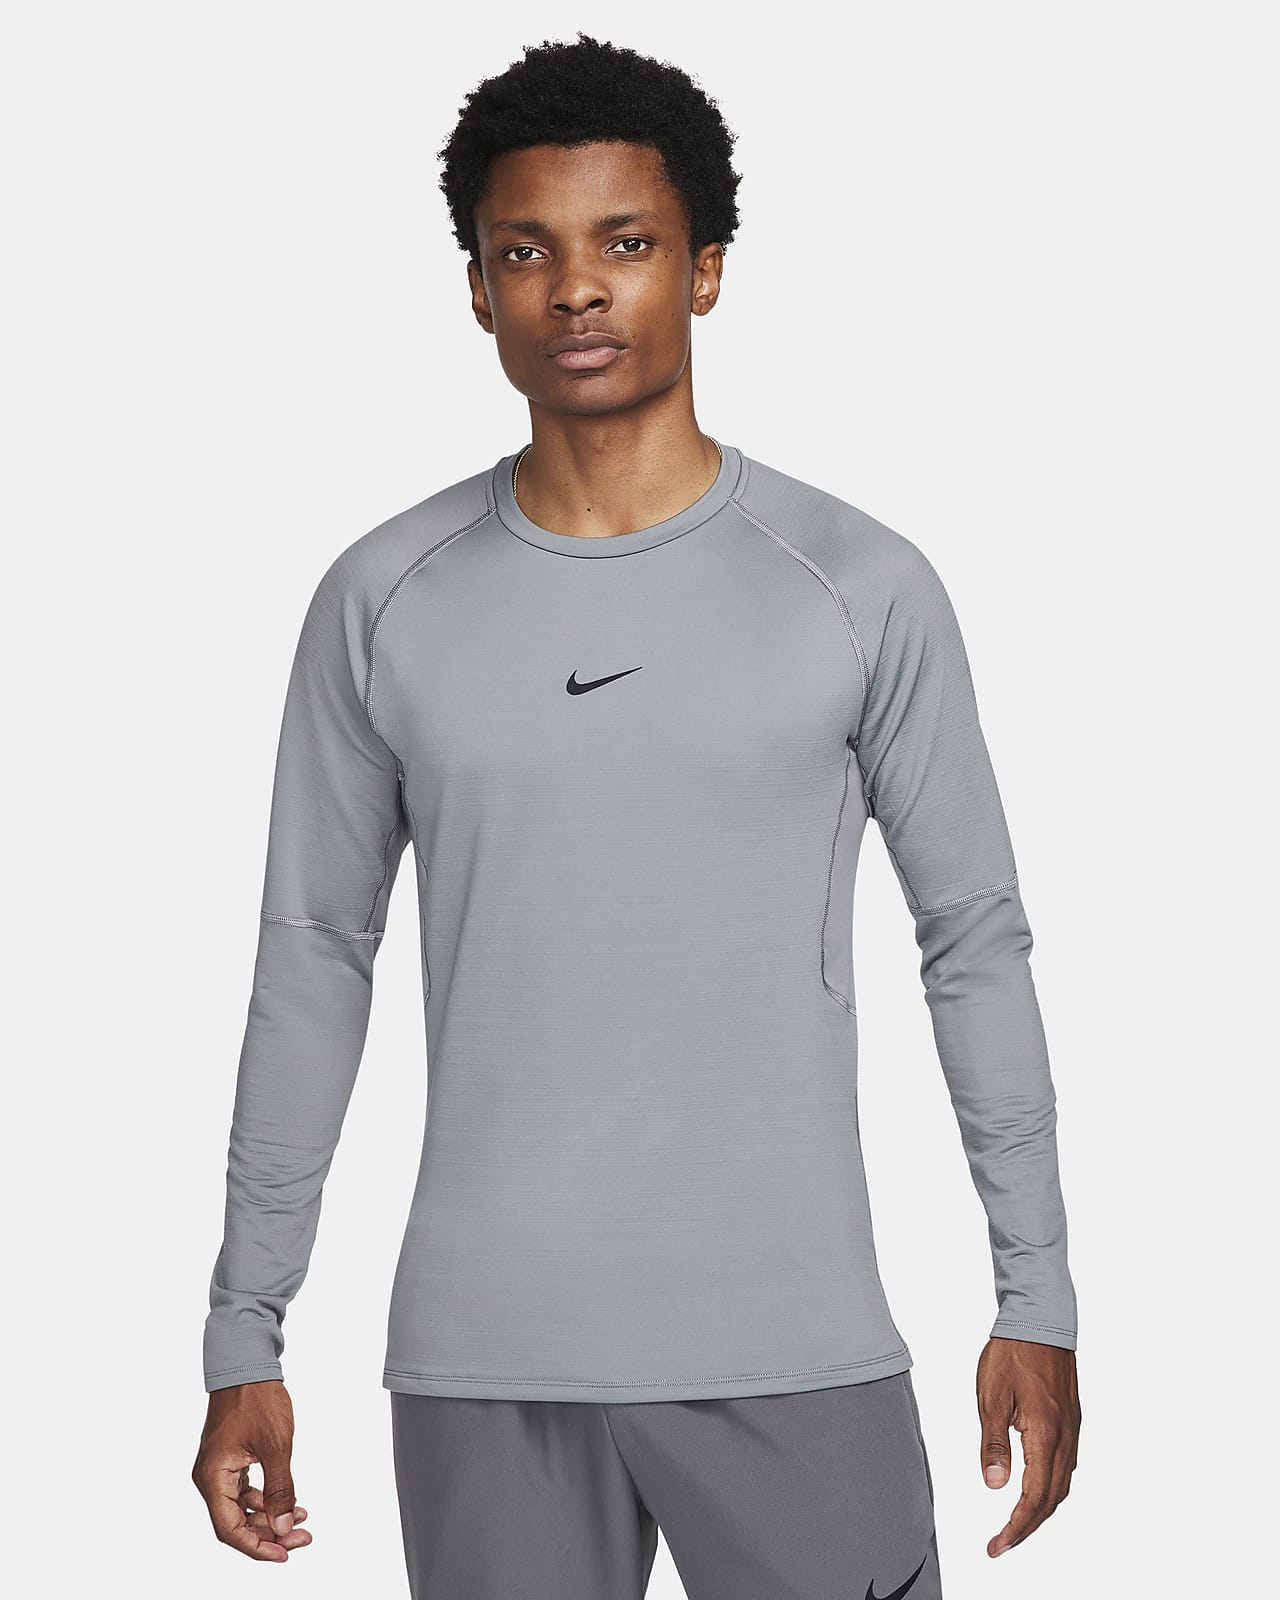 Ανδρική μακρυμάνικη μπλούζα Nike Pro Warm